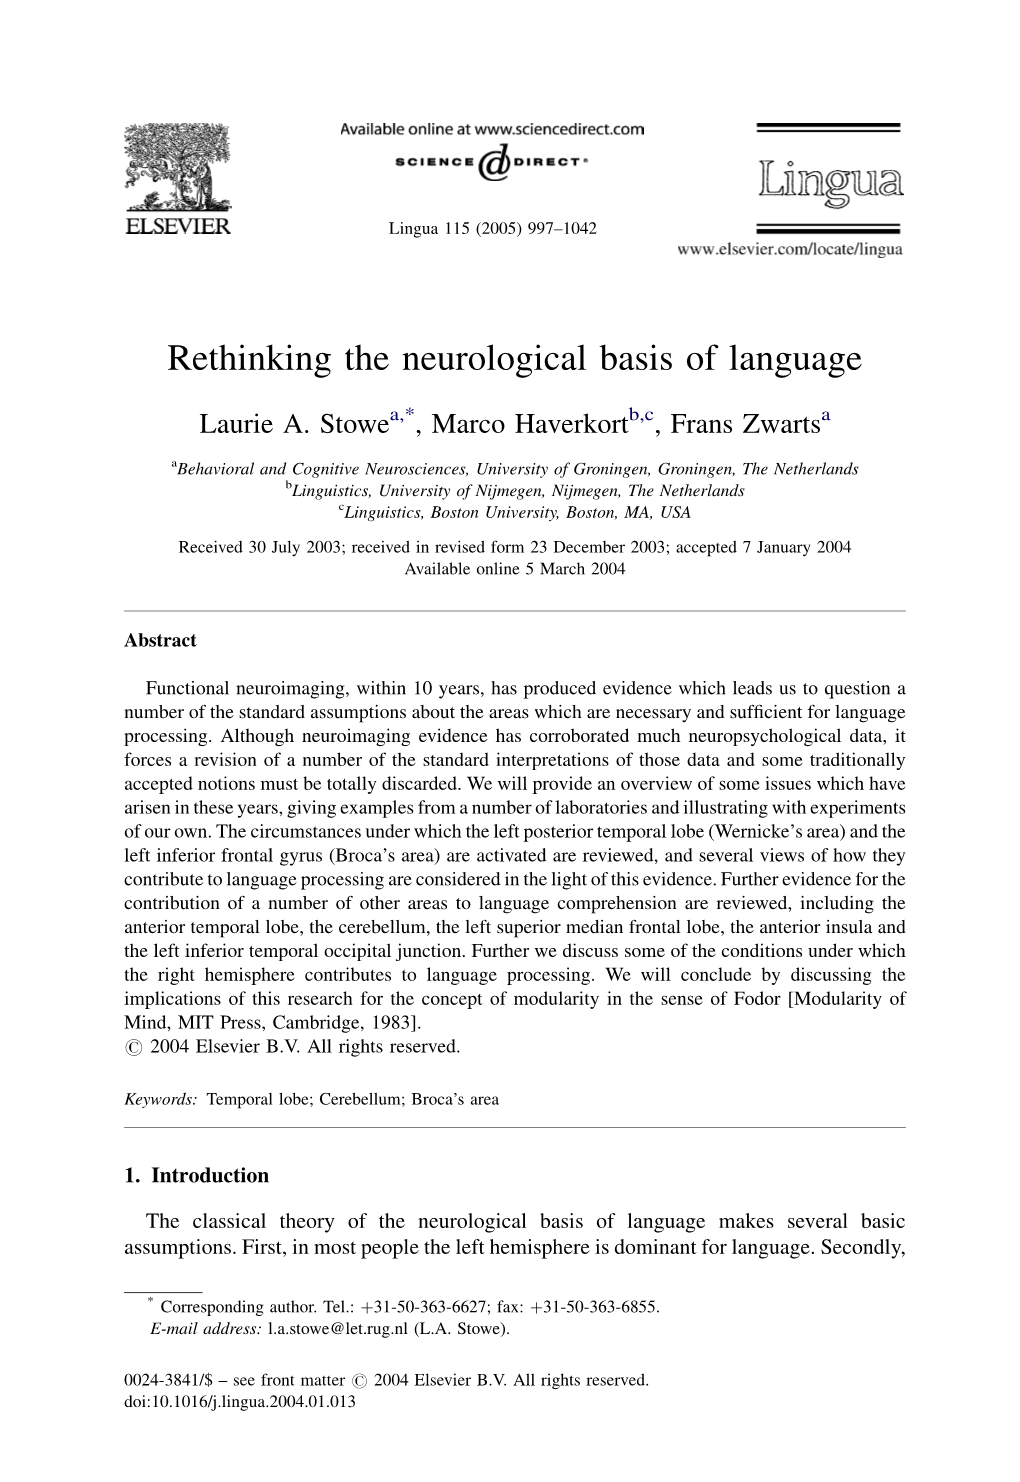 Rethinking the Neurological Basis of Language